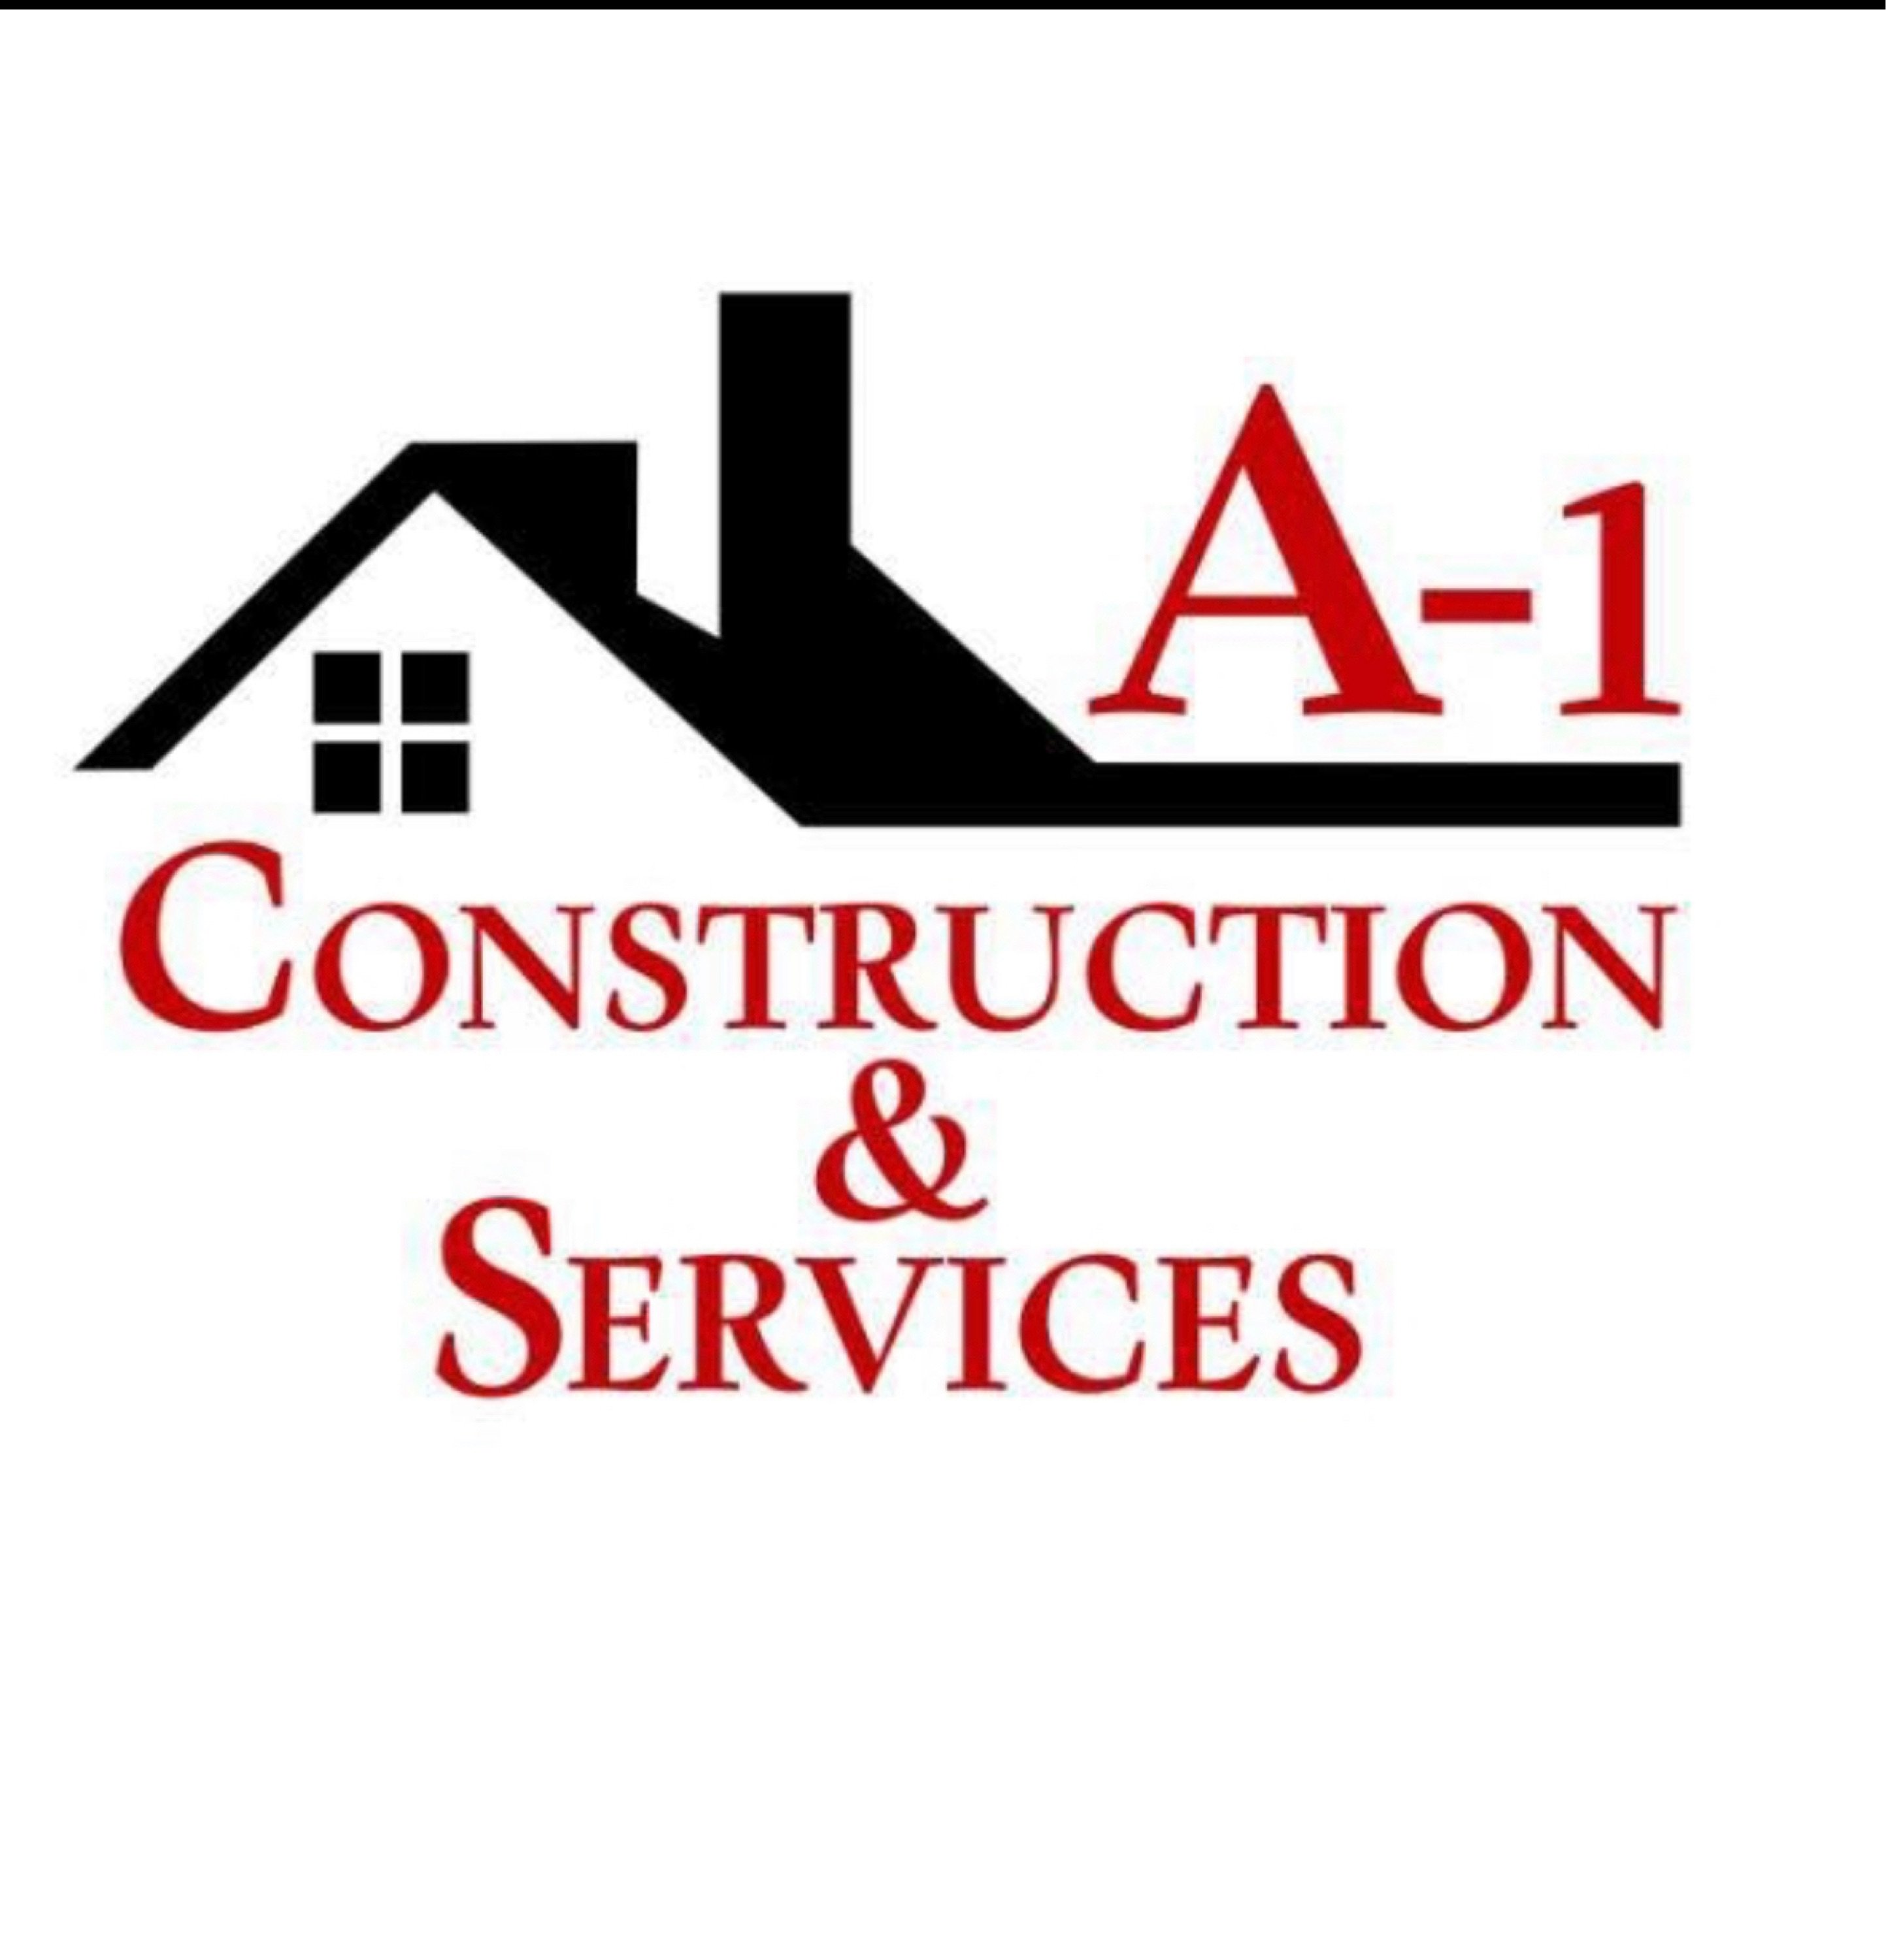 A-1 Construction & Services Logo